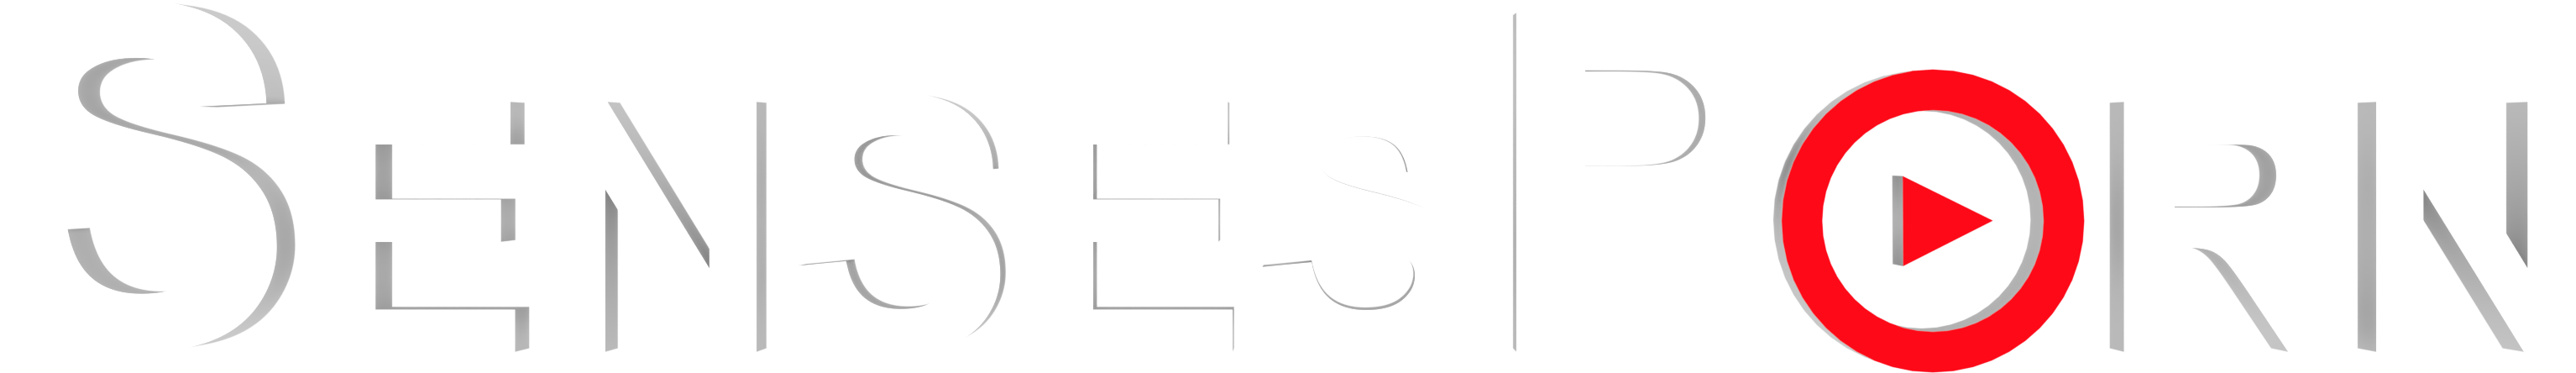 sensesporn logo